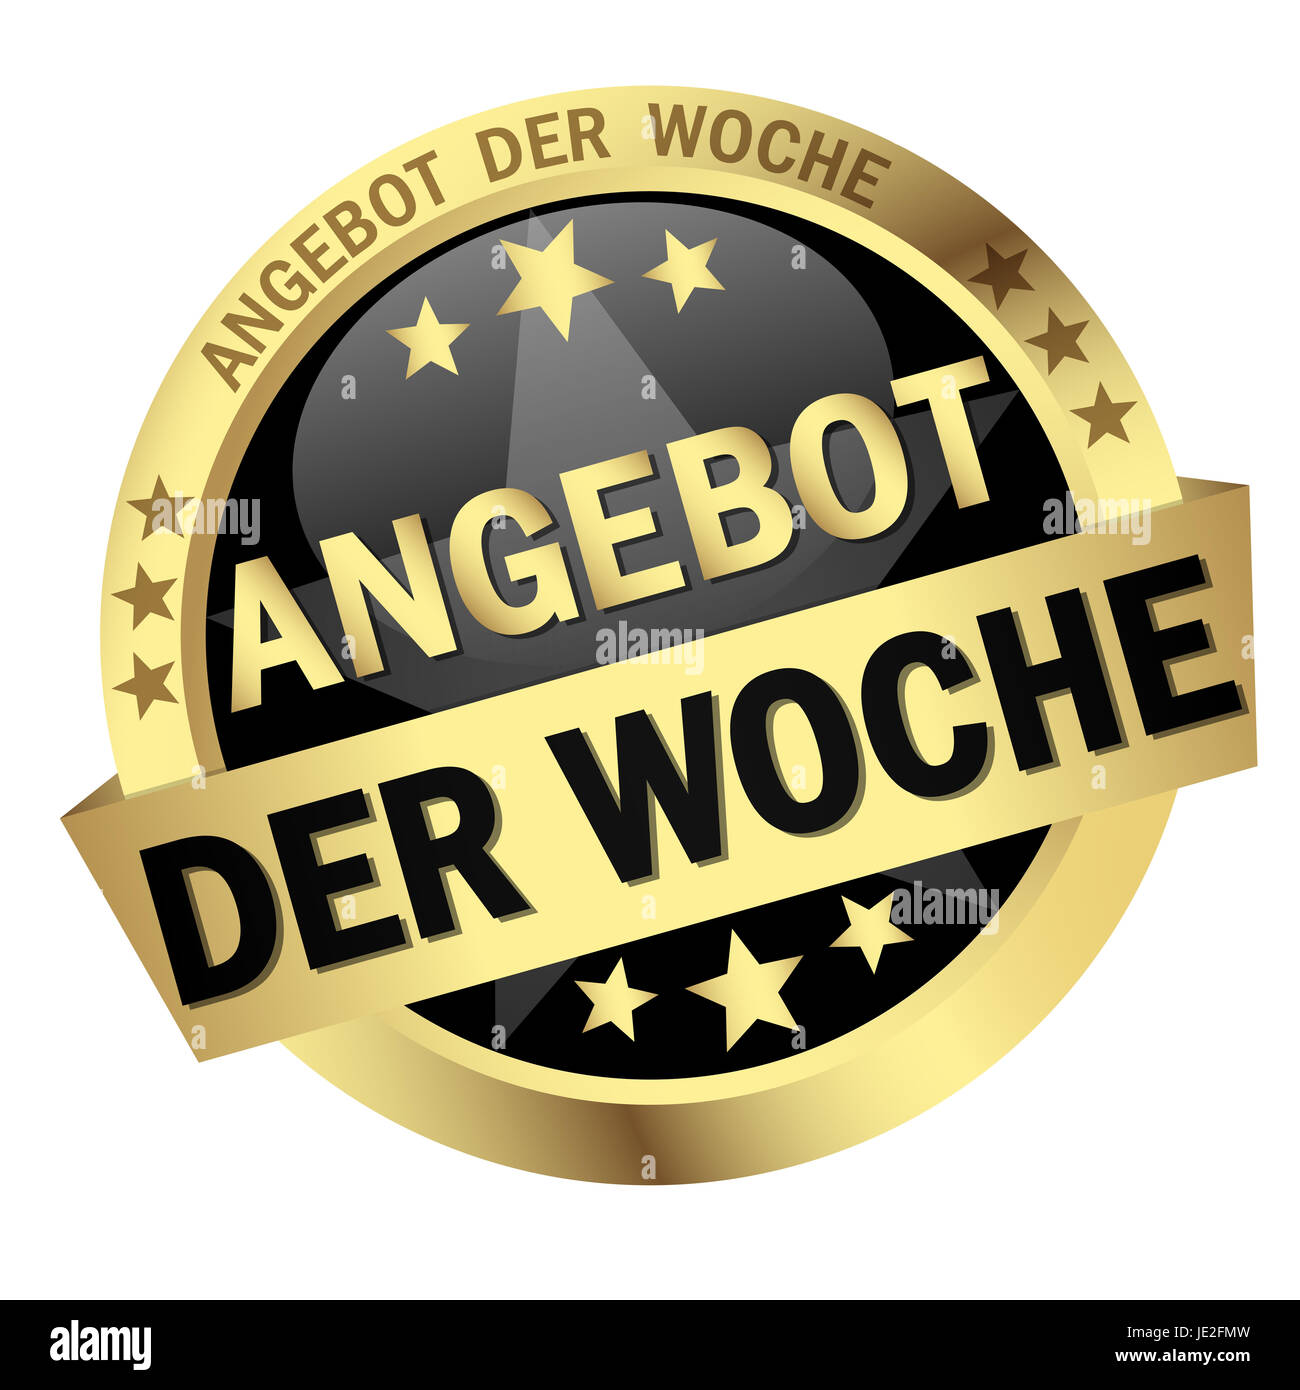 Button with banner - Angebot der Woche Stock Photo